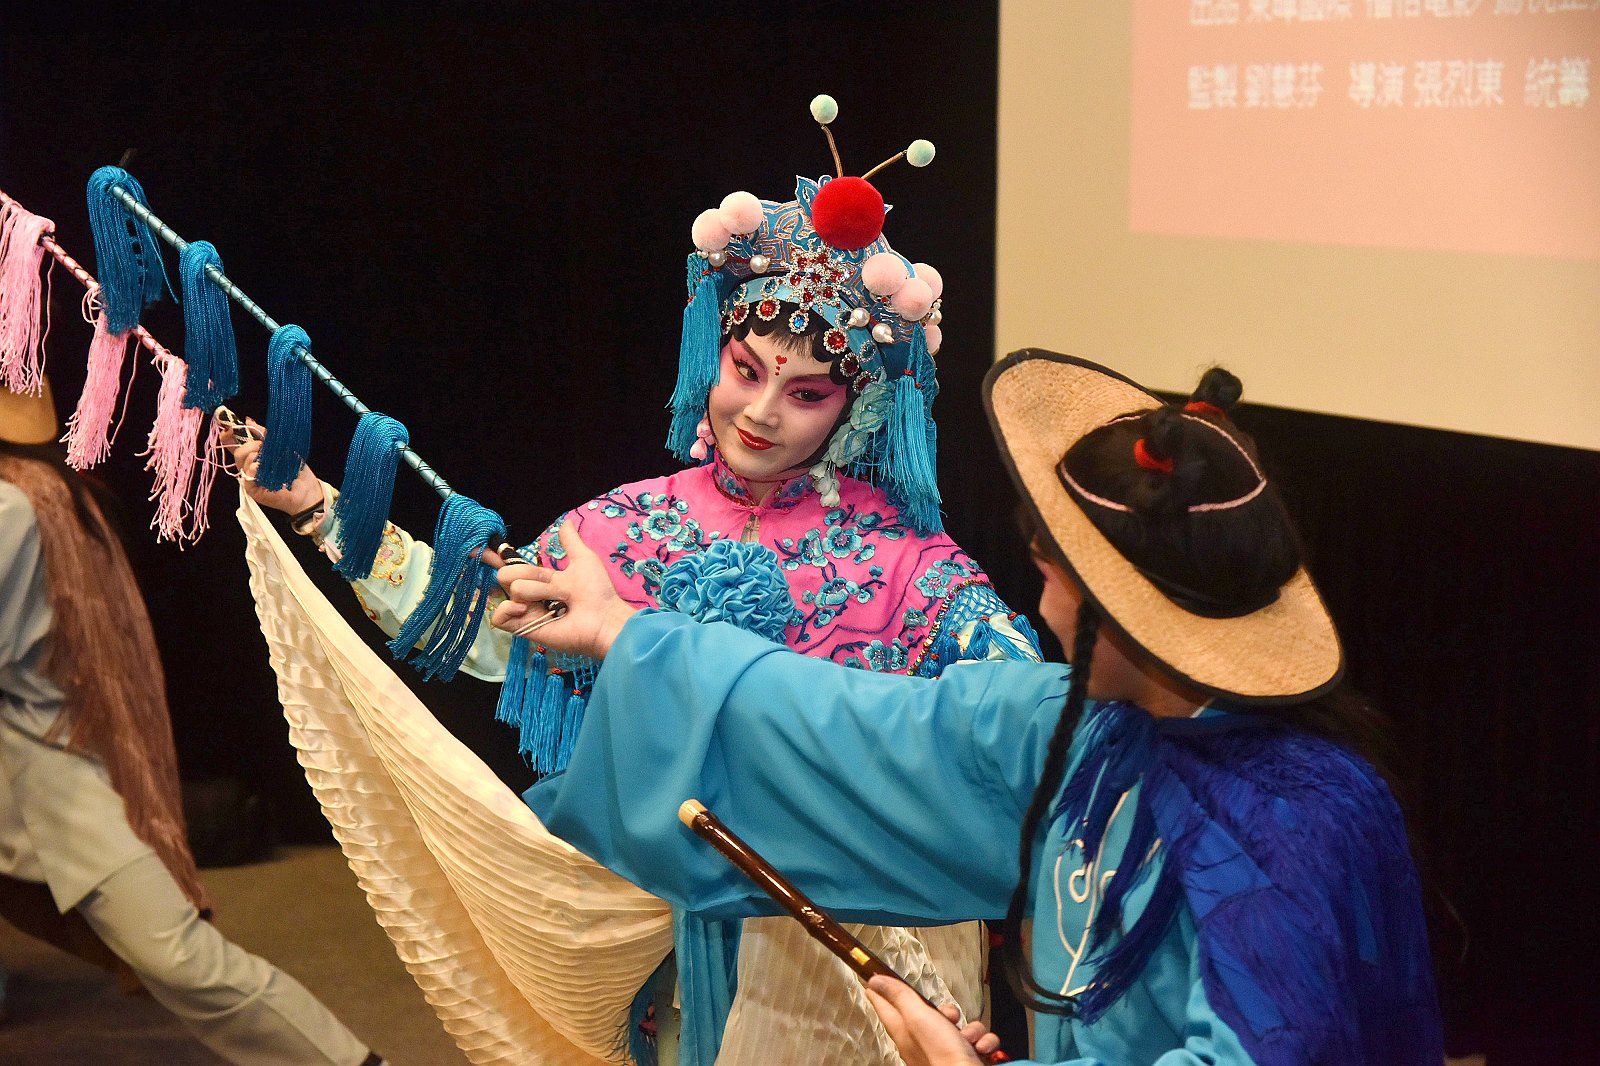 在戲曲大師的努力之下，紀錄片呈現臺灣京劇的精采故事，讓年輕世代了解京劇歷史的可貴，傳揚藝術文化。